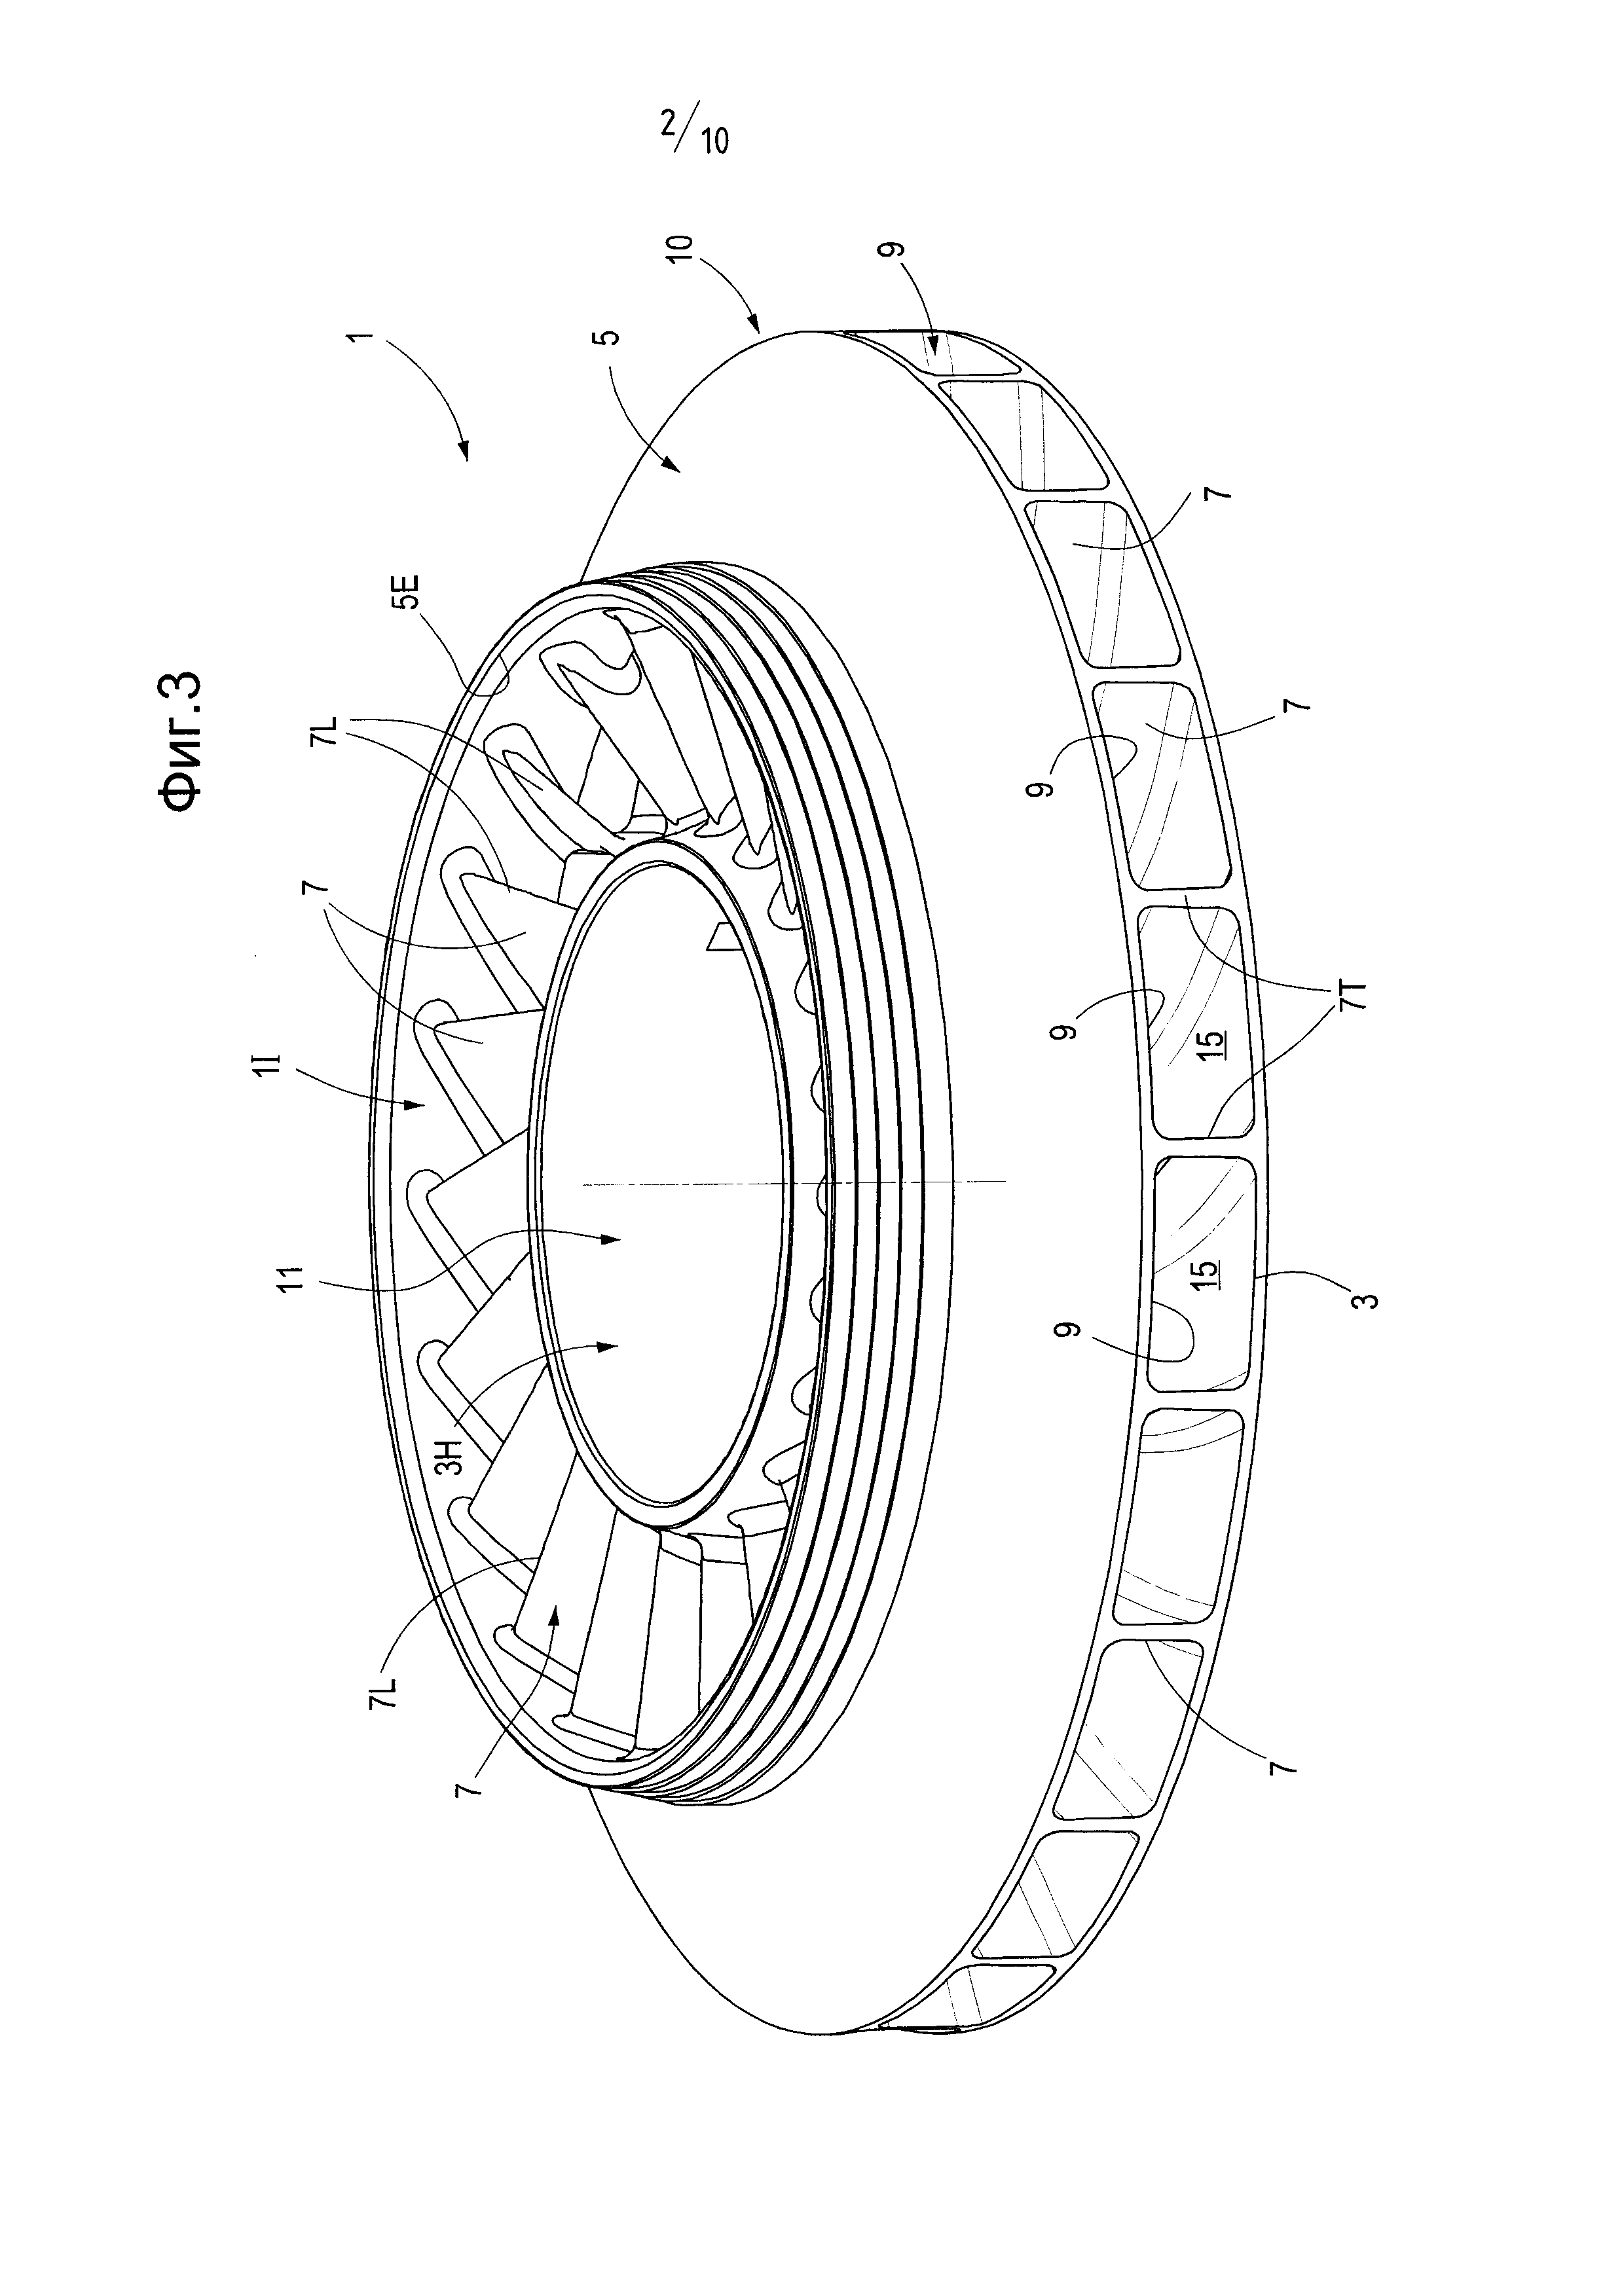 Изготовление рабочего колеса турбомашины путем сборки трубчатых компонентов